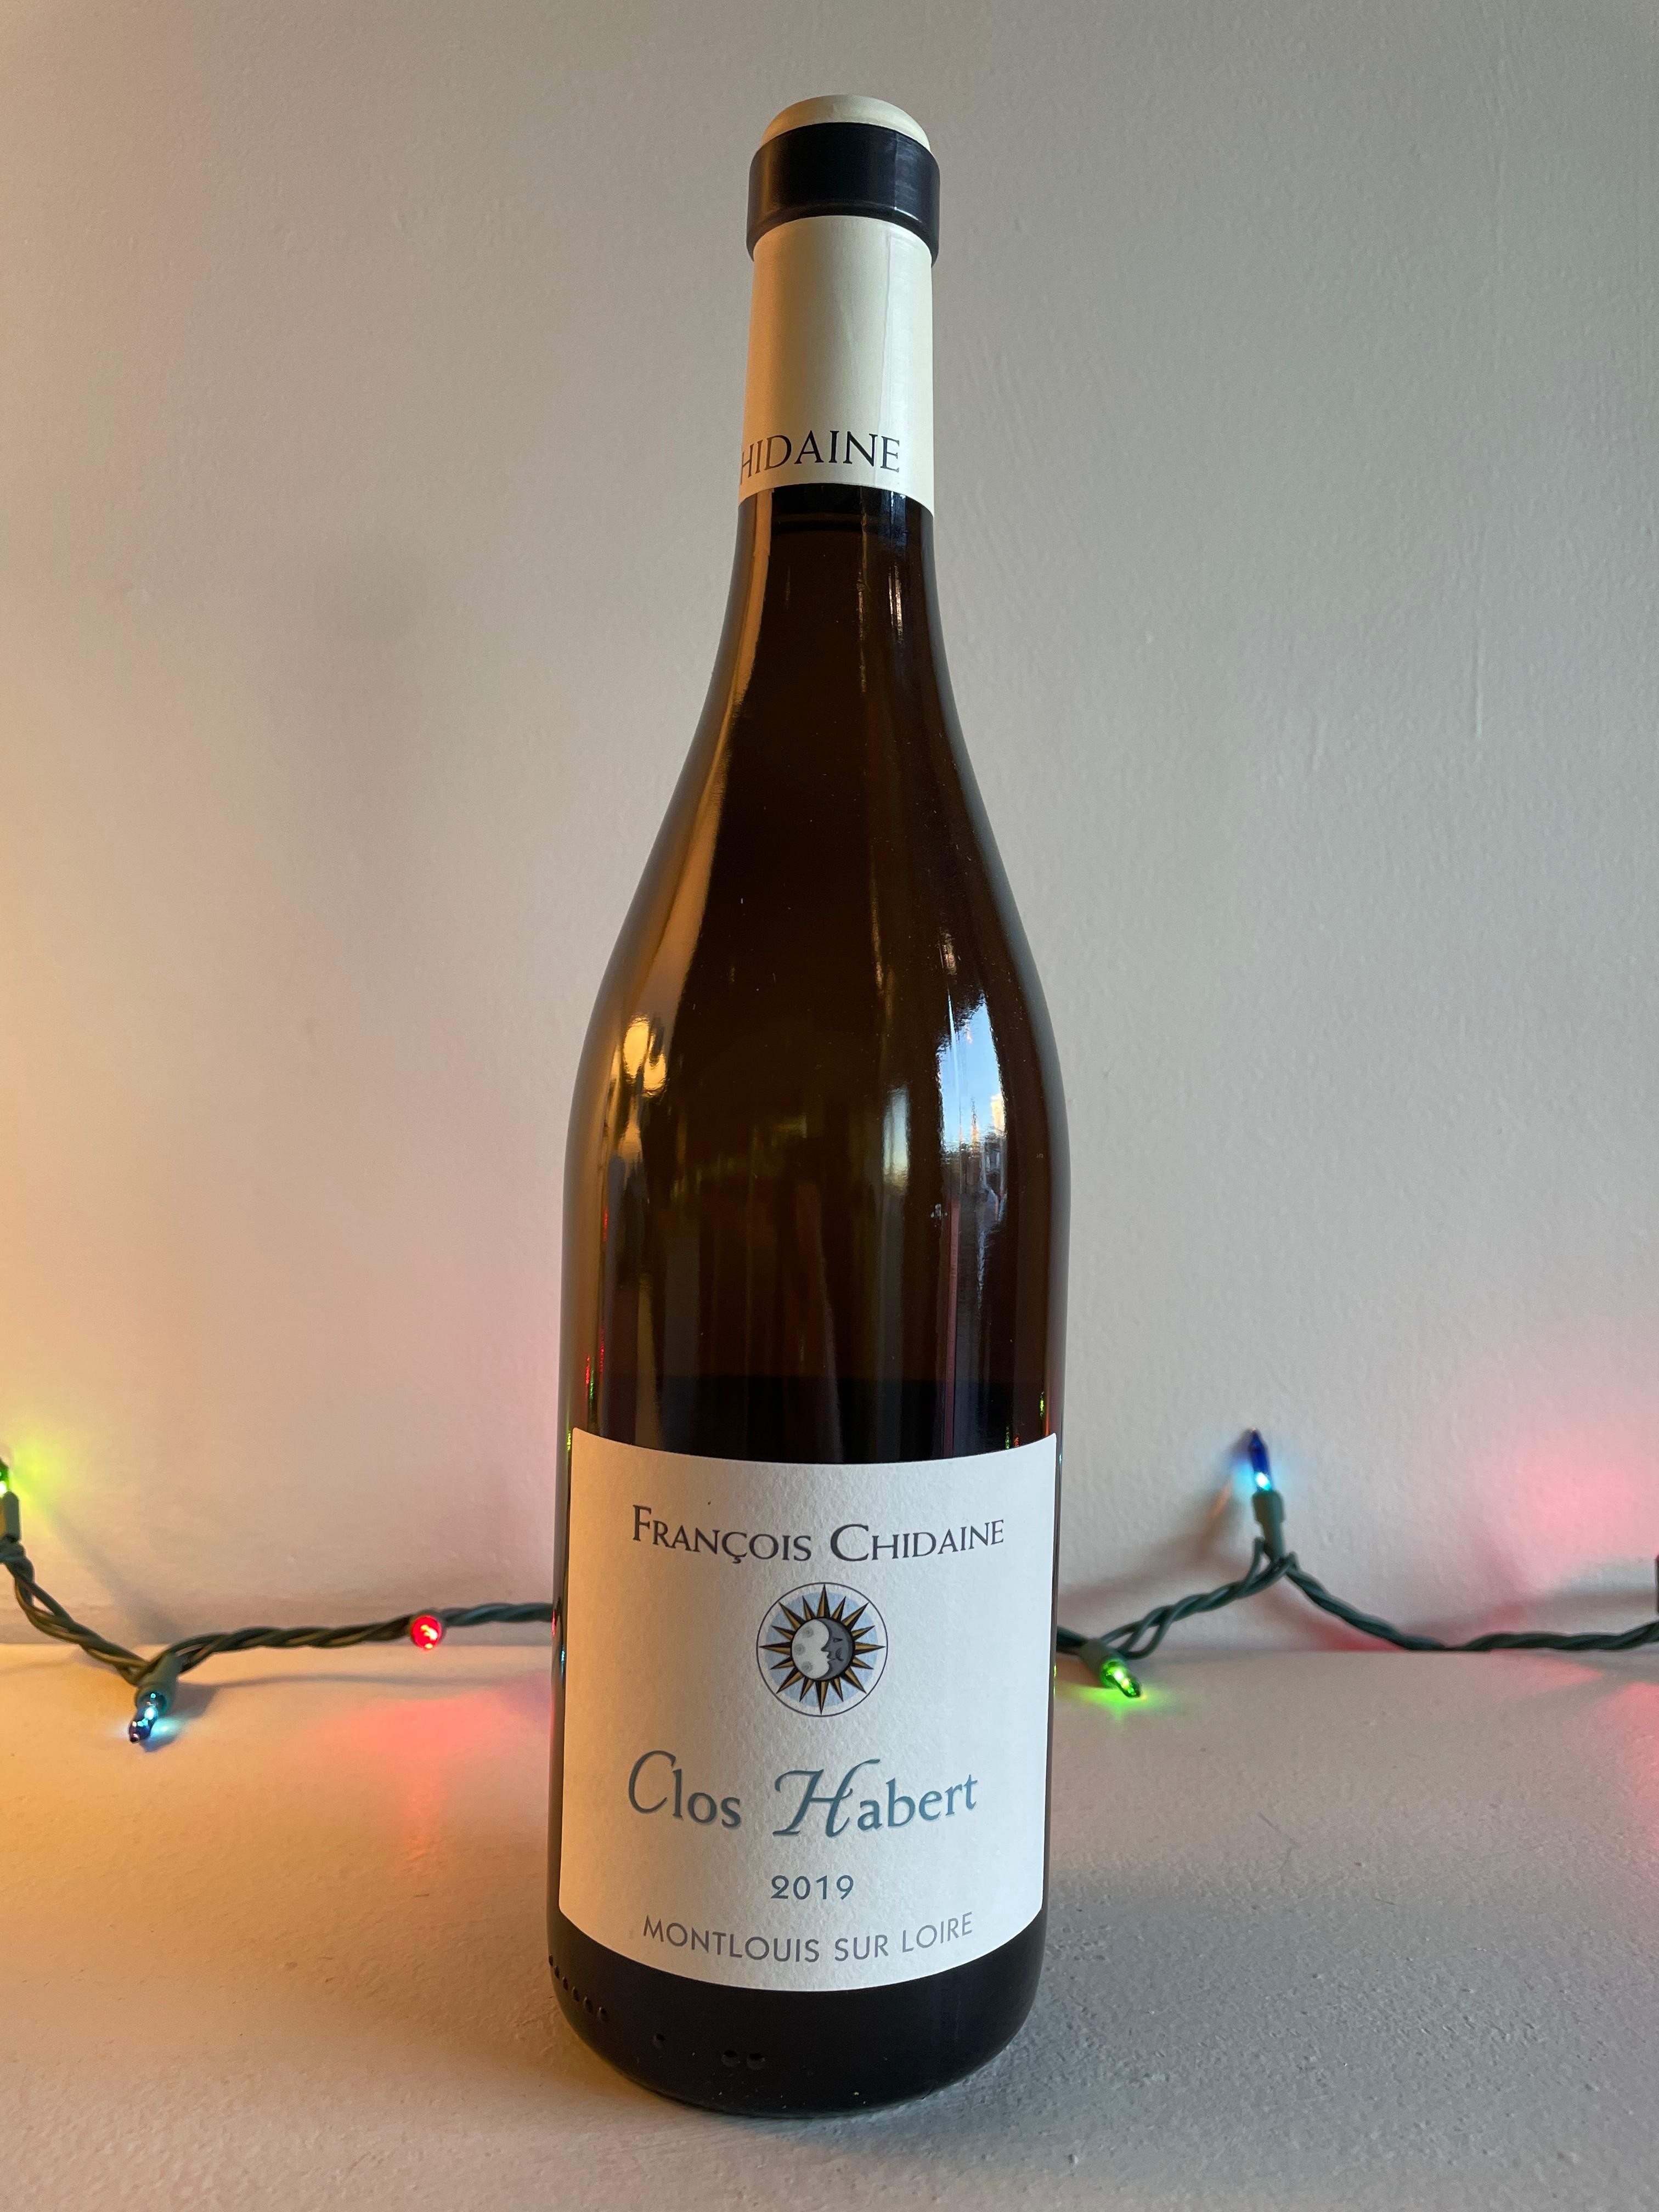 2019 Chenin Blanc "Clos Habert" Francois Chidaine, Montlouis sur Loire